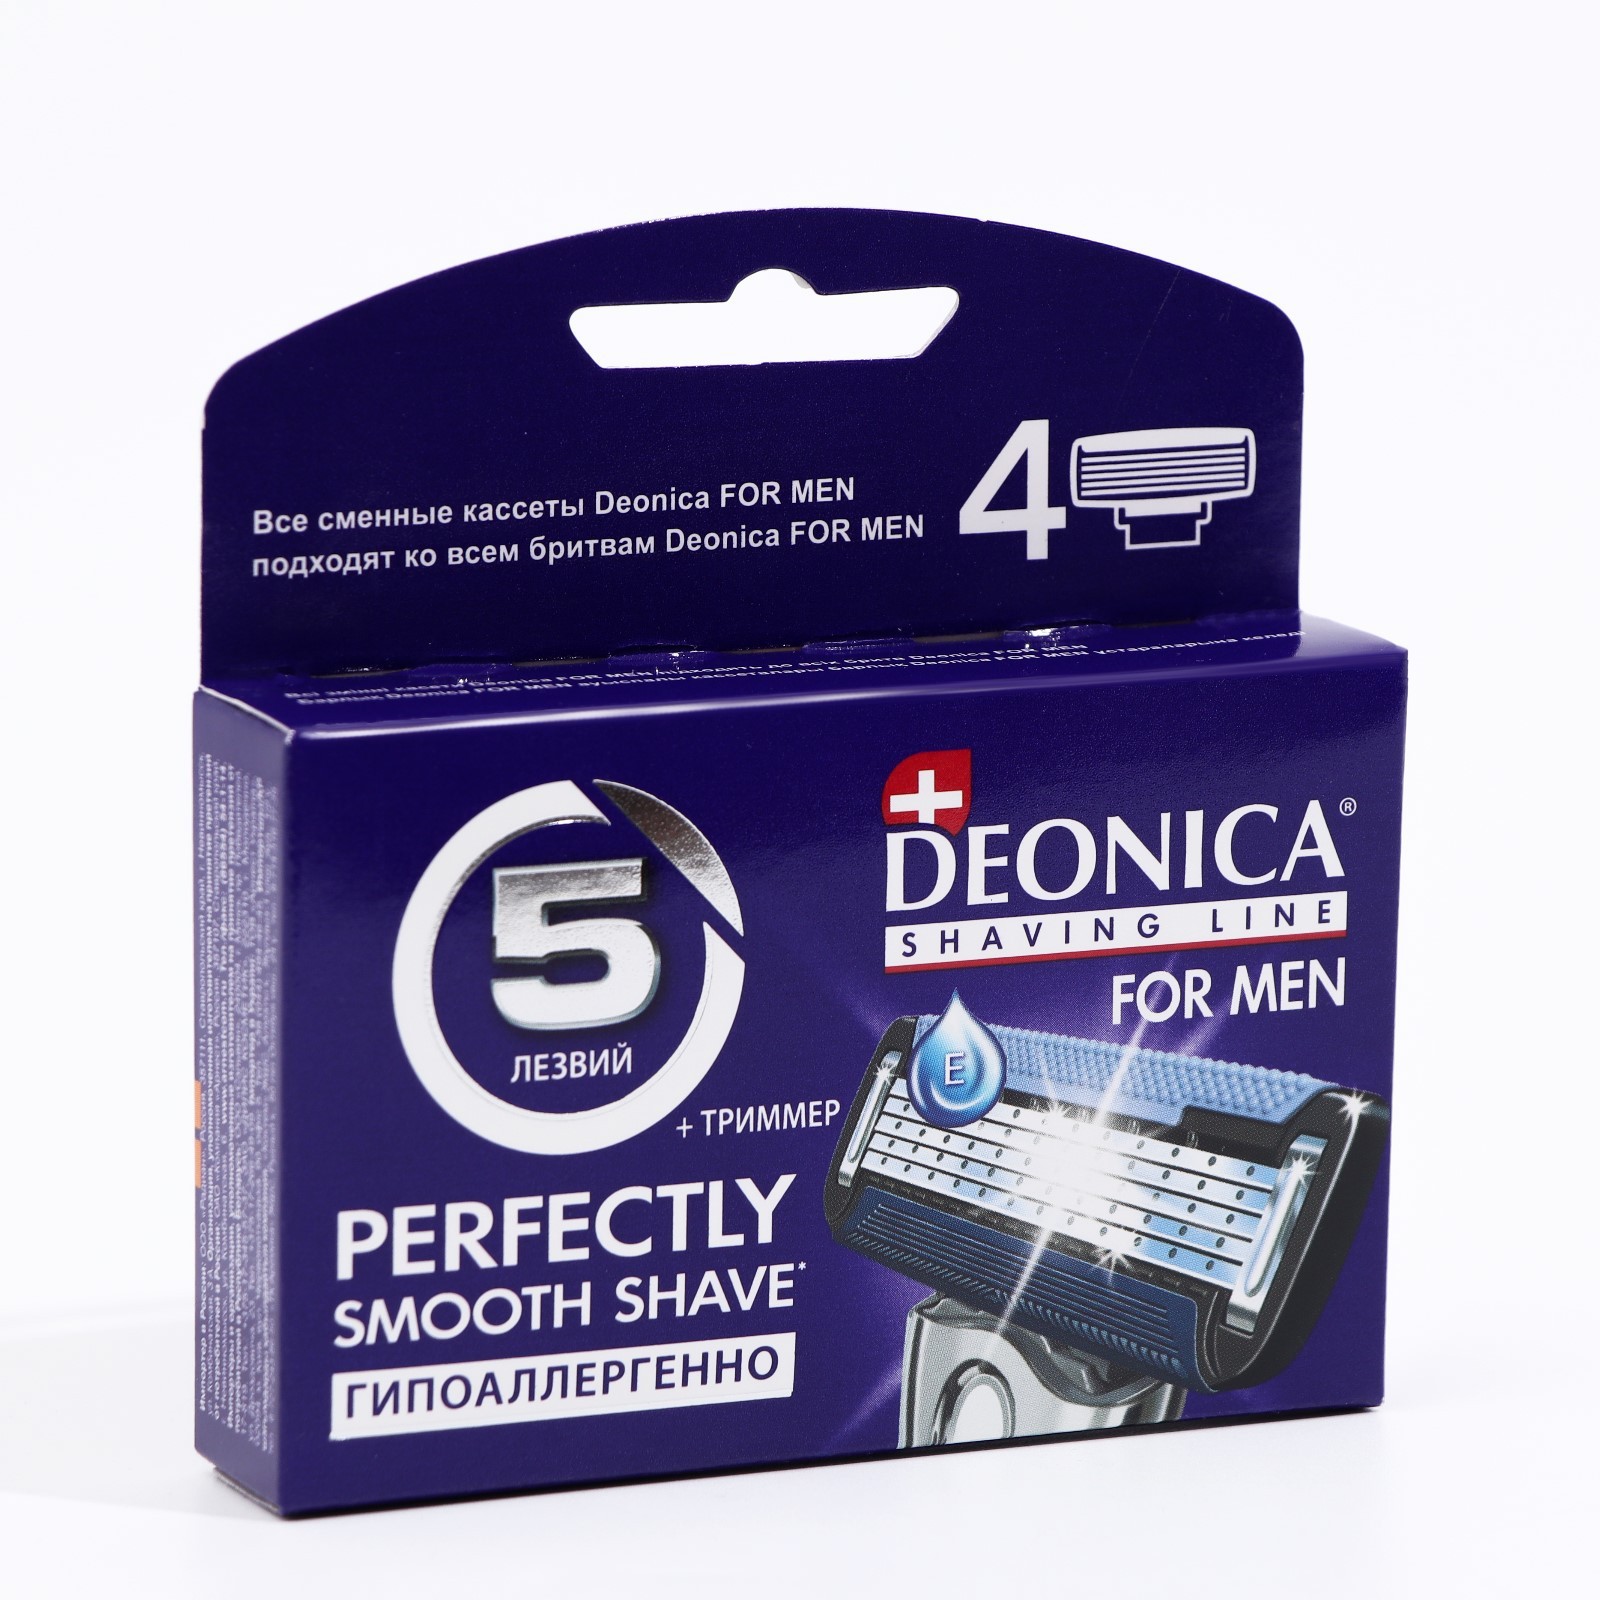 Кассеты deonica. Сменные кассеты Deonica 5 лезвий. Станок Deonica for men 5 лезвий 1 кассета/12-035289. Deonica for men сменные кассеты 4шт 3 лезвия. Сменные кассеты для бритья Deonica for men с 5 лезвиям.